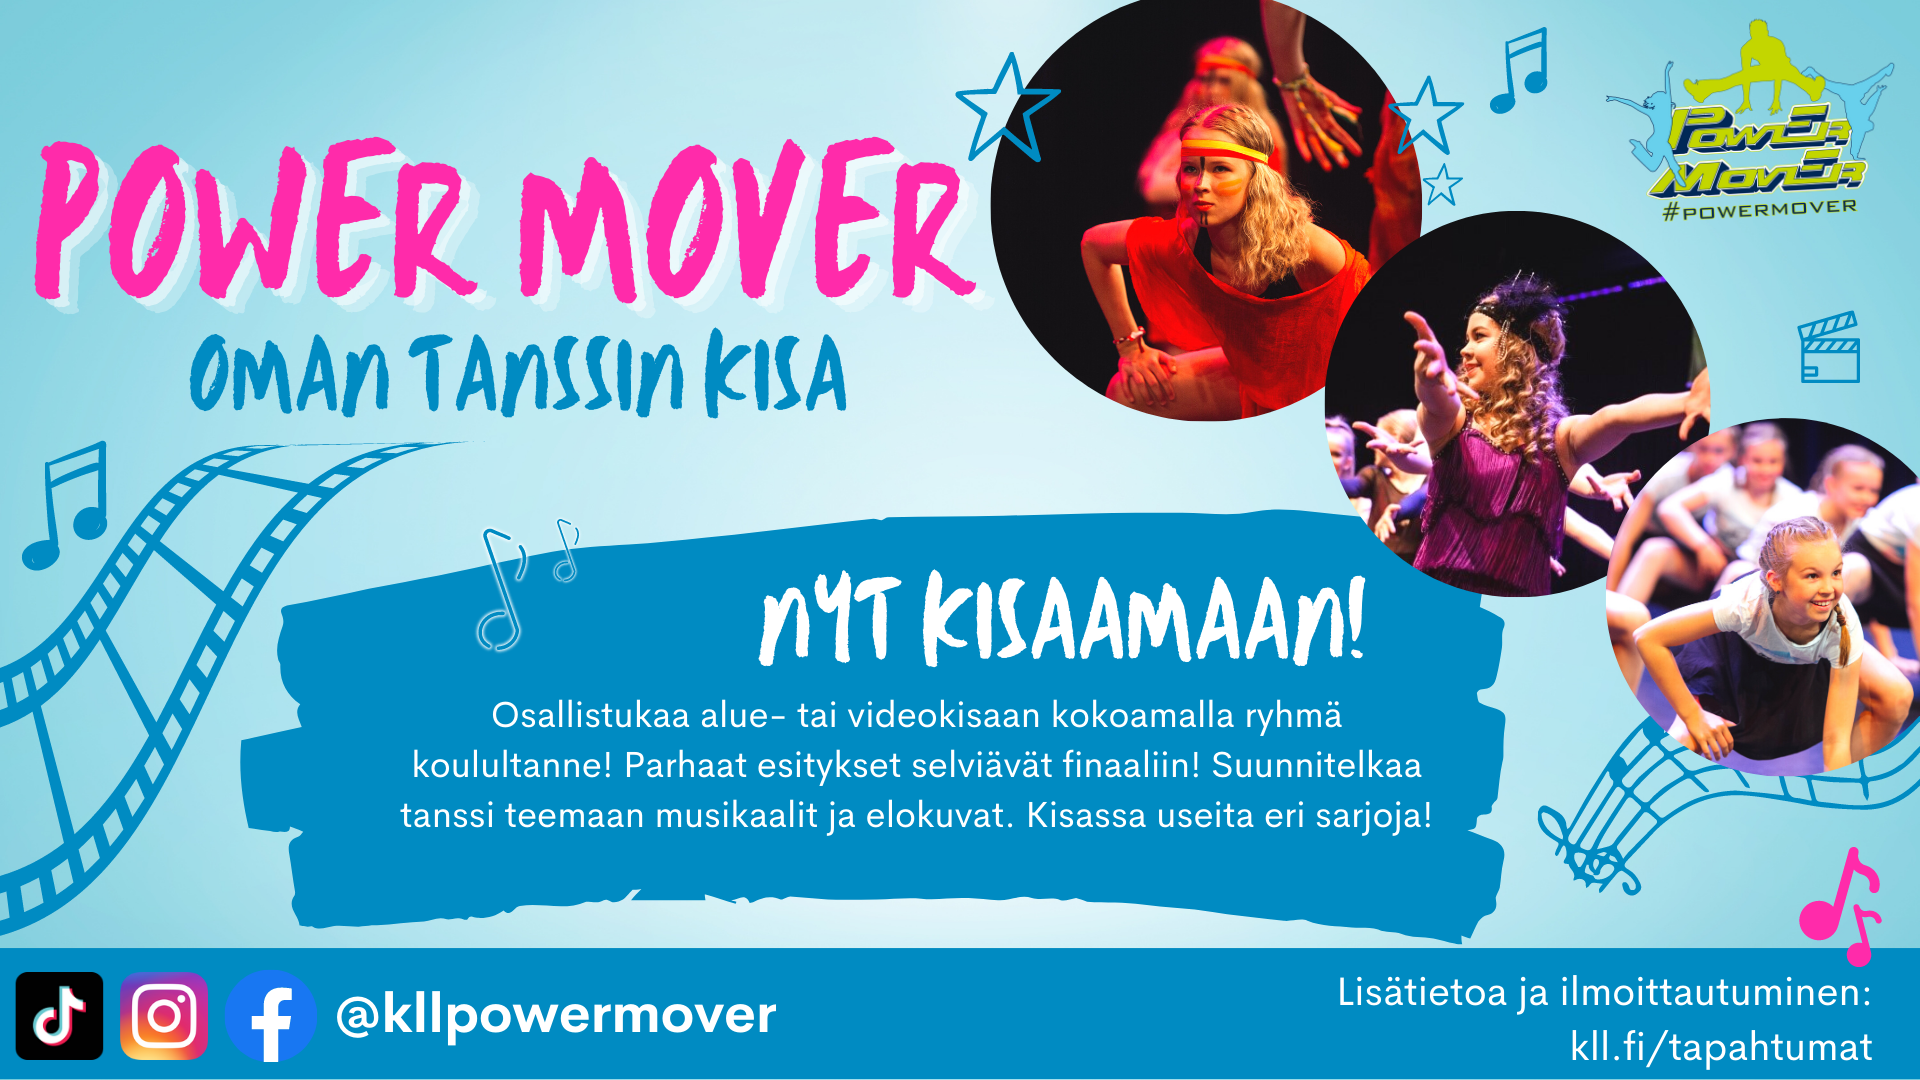 Power Mover -tanssikilpailun mainos. Power Mover aluekisa. Nyt kisaamaan! Osallistukaa alue- tai videokisaan kokoamalla ryhmä koulultanne! Parhaat esitykset selviävät finaaliin! Suunnitelkaa tanssi teemaan musikaalit ja elokuvat. Kisassa useita eri sarjoja!